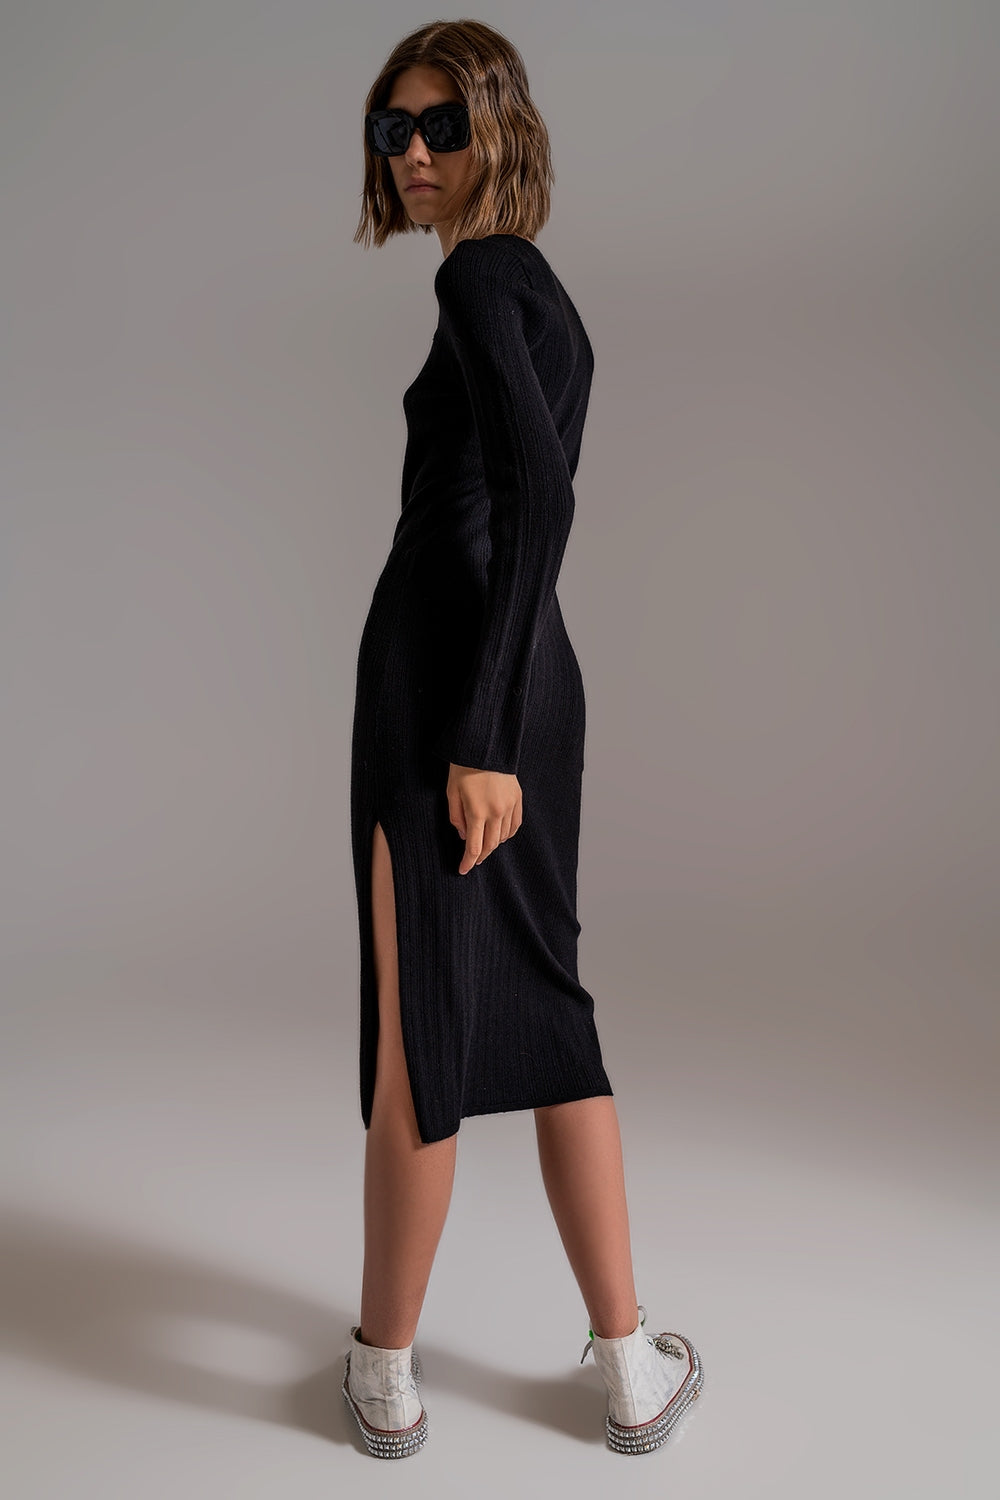 Midi Knit Dress With Square Neckline in Black - Szua Store